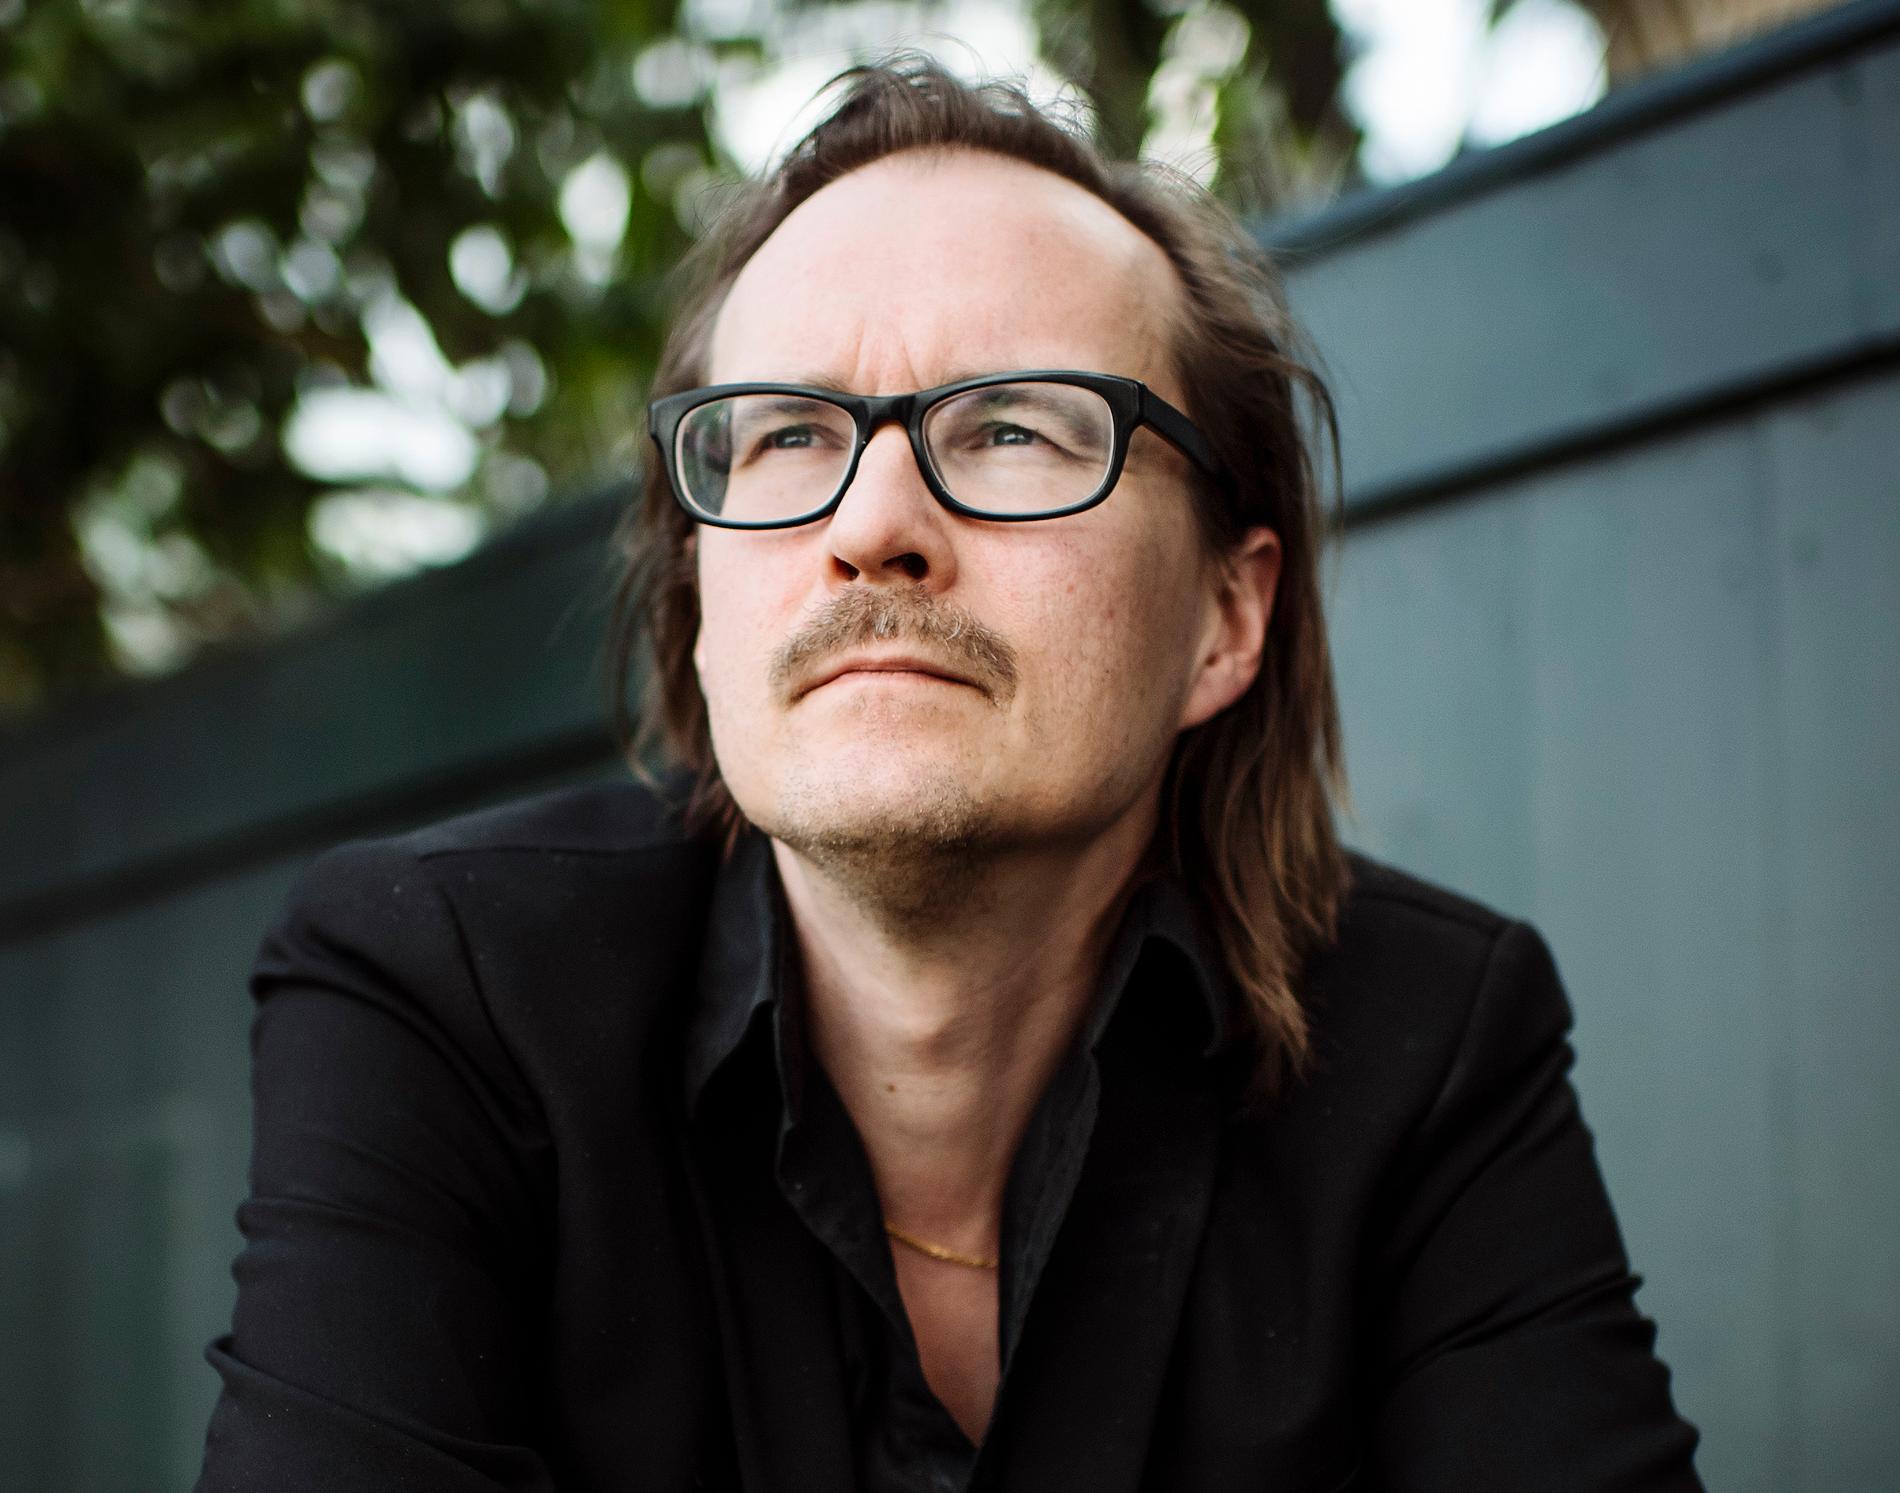 Matti Ollikainen (född 1973) är musiker och låtskrivare  i bland annat bandet Franska trion.